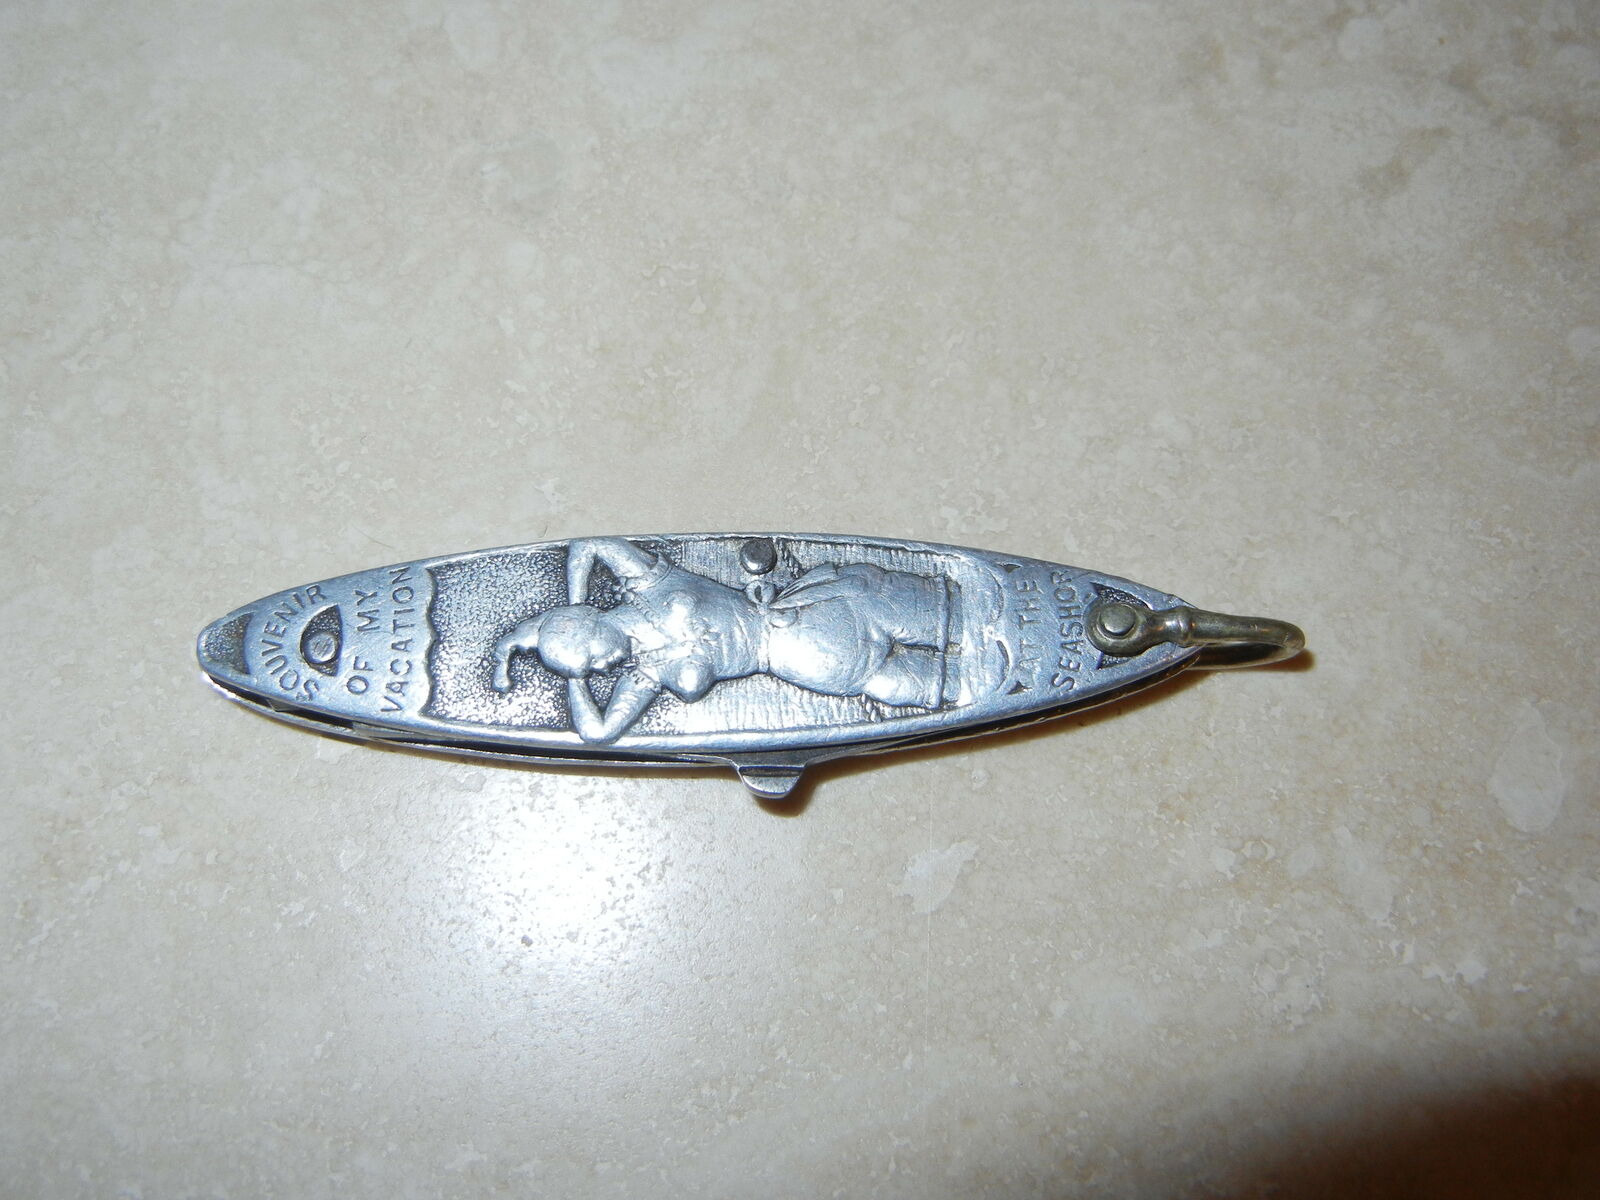 1910 Art Nouveau Pocket Knife Souvenir of Vacation at Seashore D. Peres Solingen